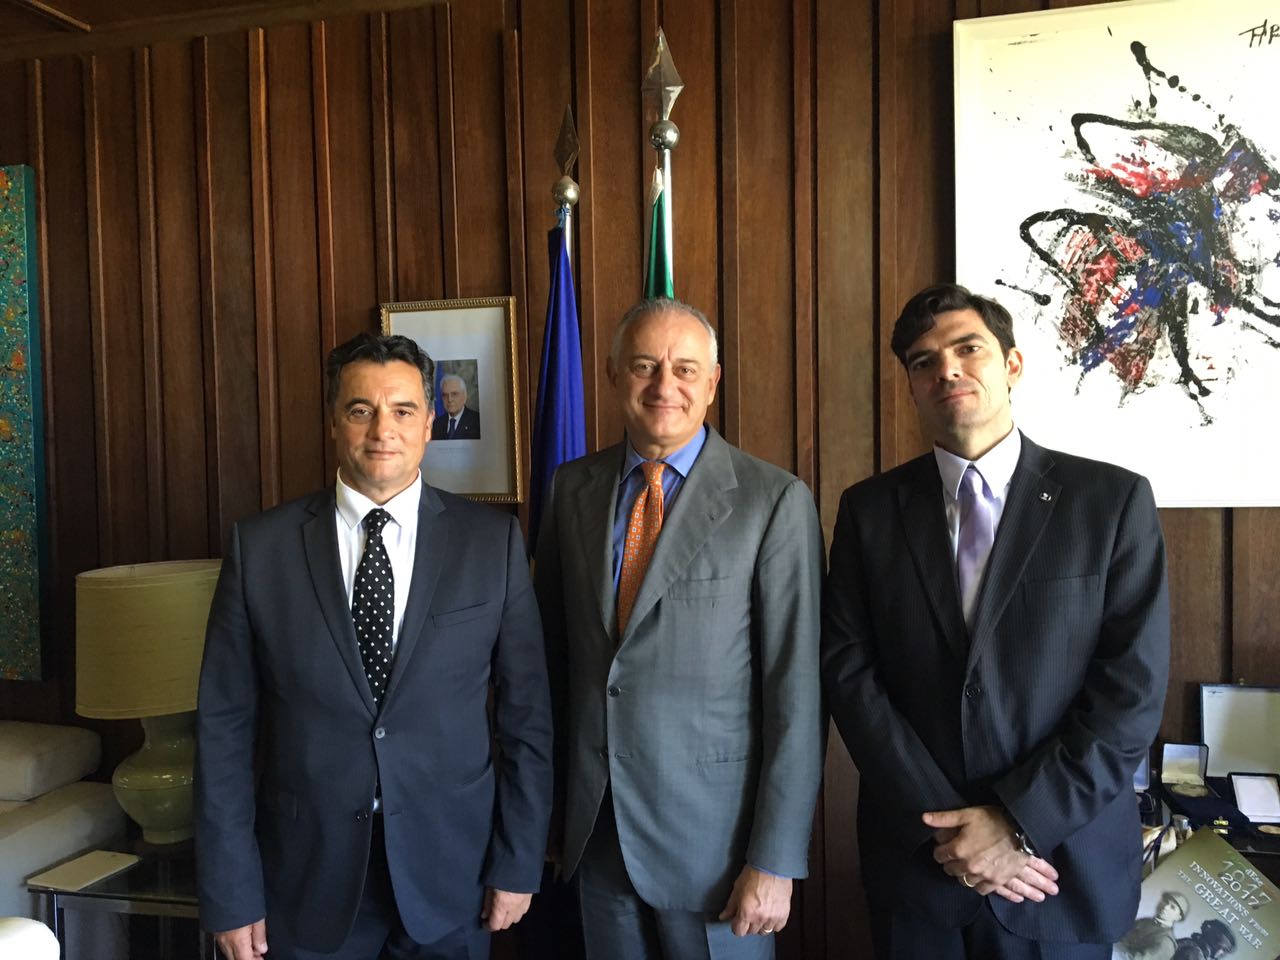 BRASÍLIA - Reunião com embaixador da Itália destaca acordo de cooperação e simpósio com juízes da “Lava Jato” e da “Mãos Limpas”